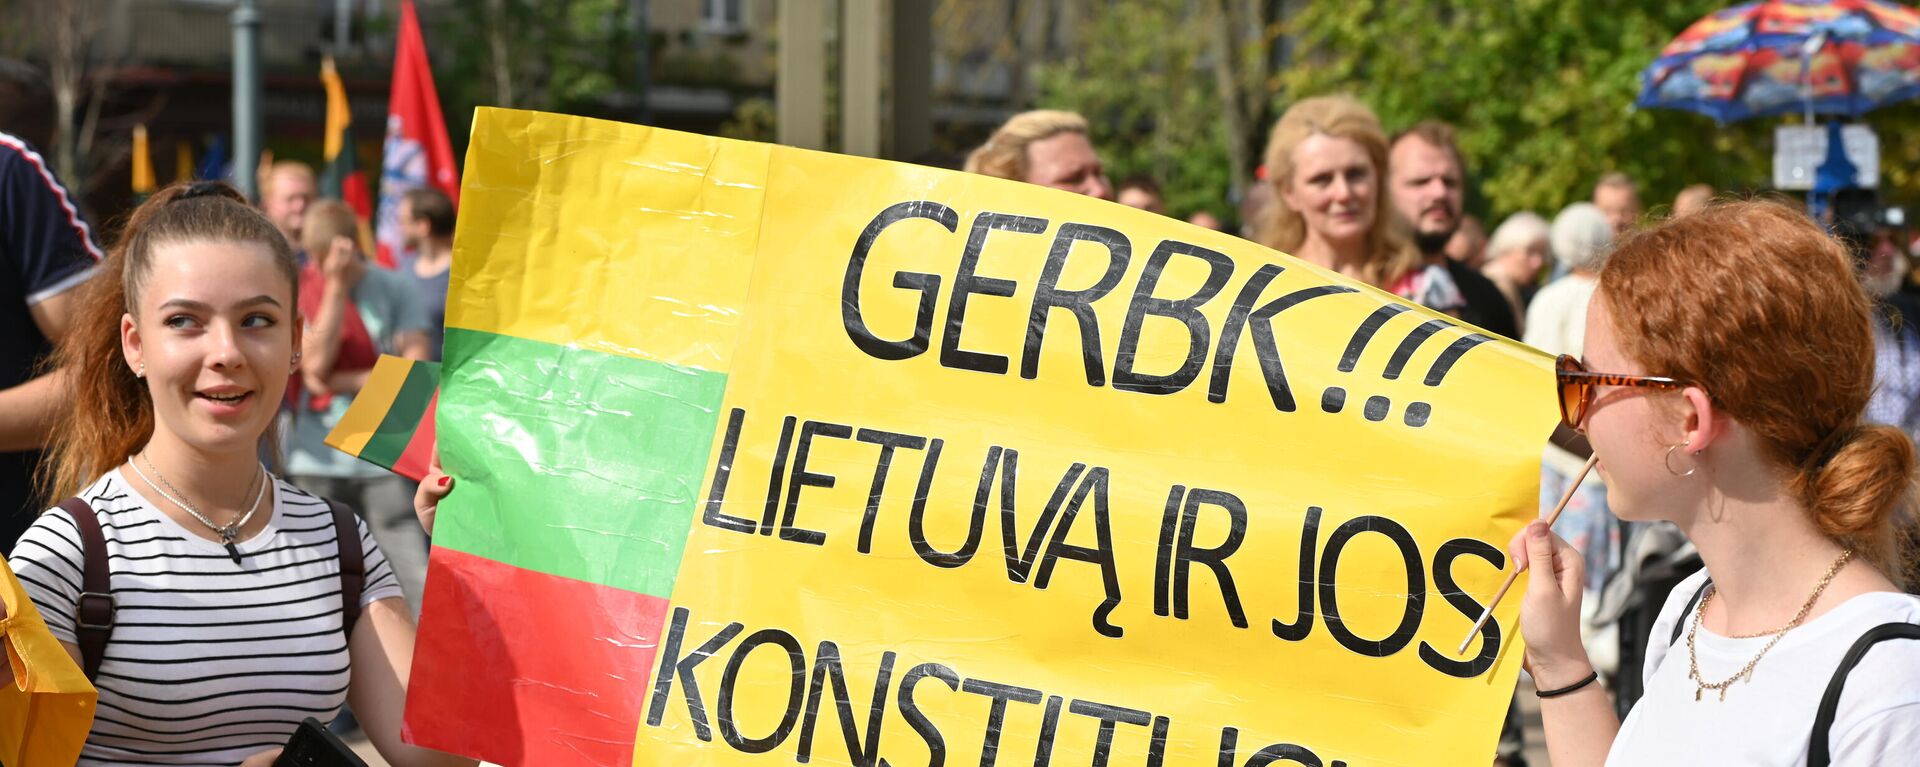 Митингующие с плакатом у здания Сейма Литвы - Sputnik Литва, 1920, 12.08.2021